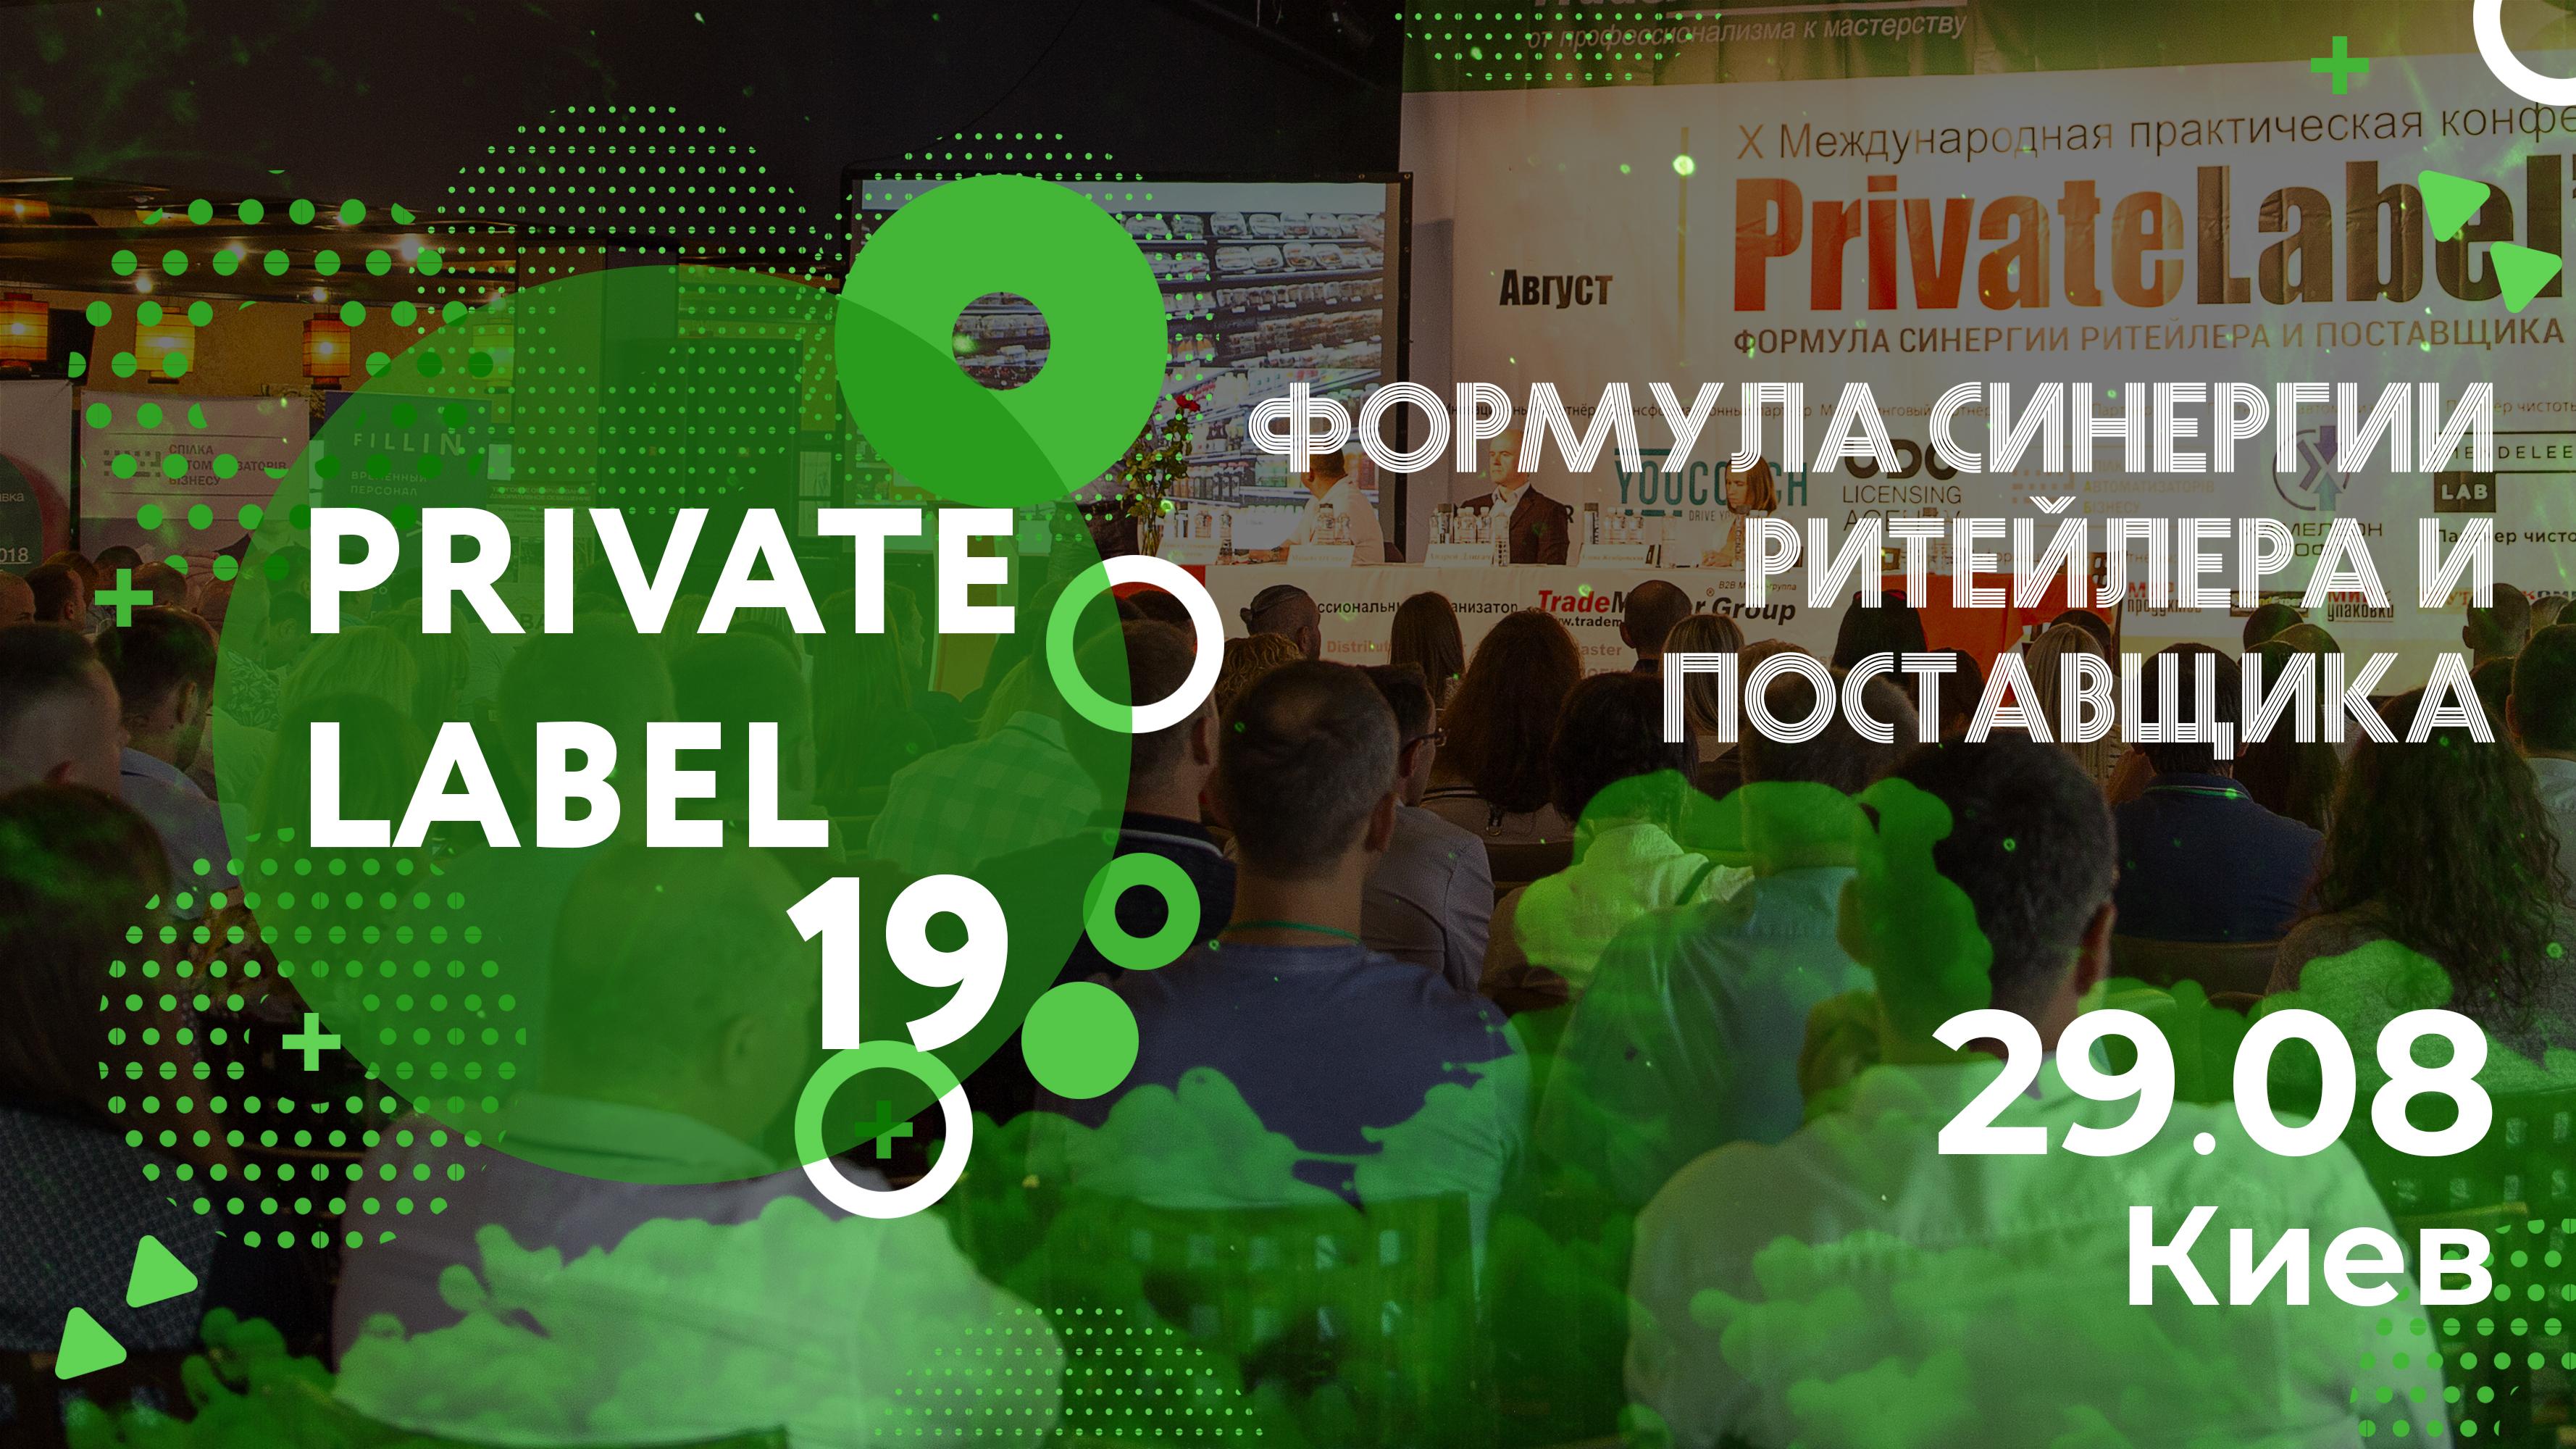 Ежегодная Международная бизнес-конференция PrivateLabel - 2019:«Формула синергии ритейлера и поставщика»